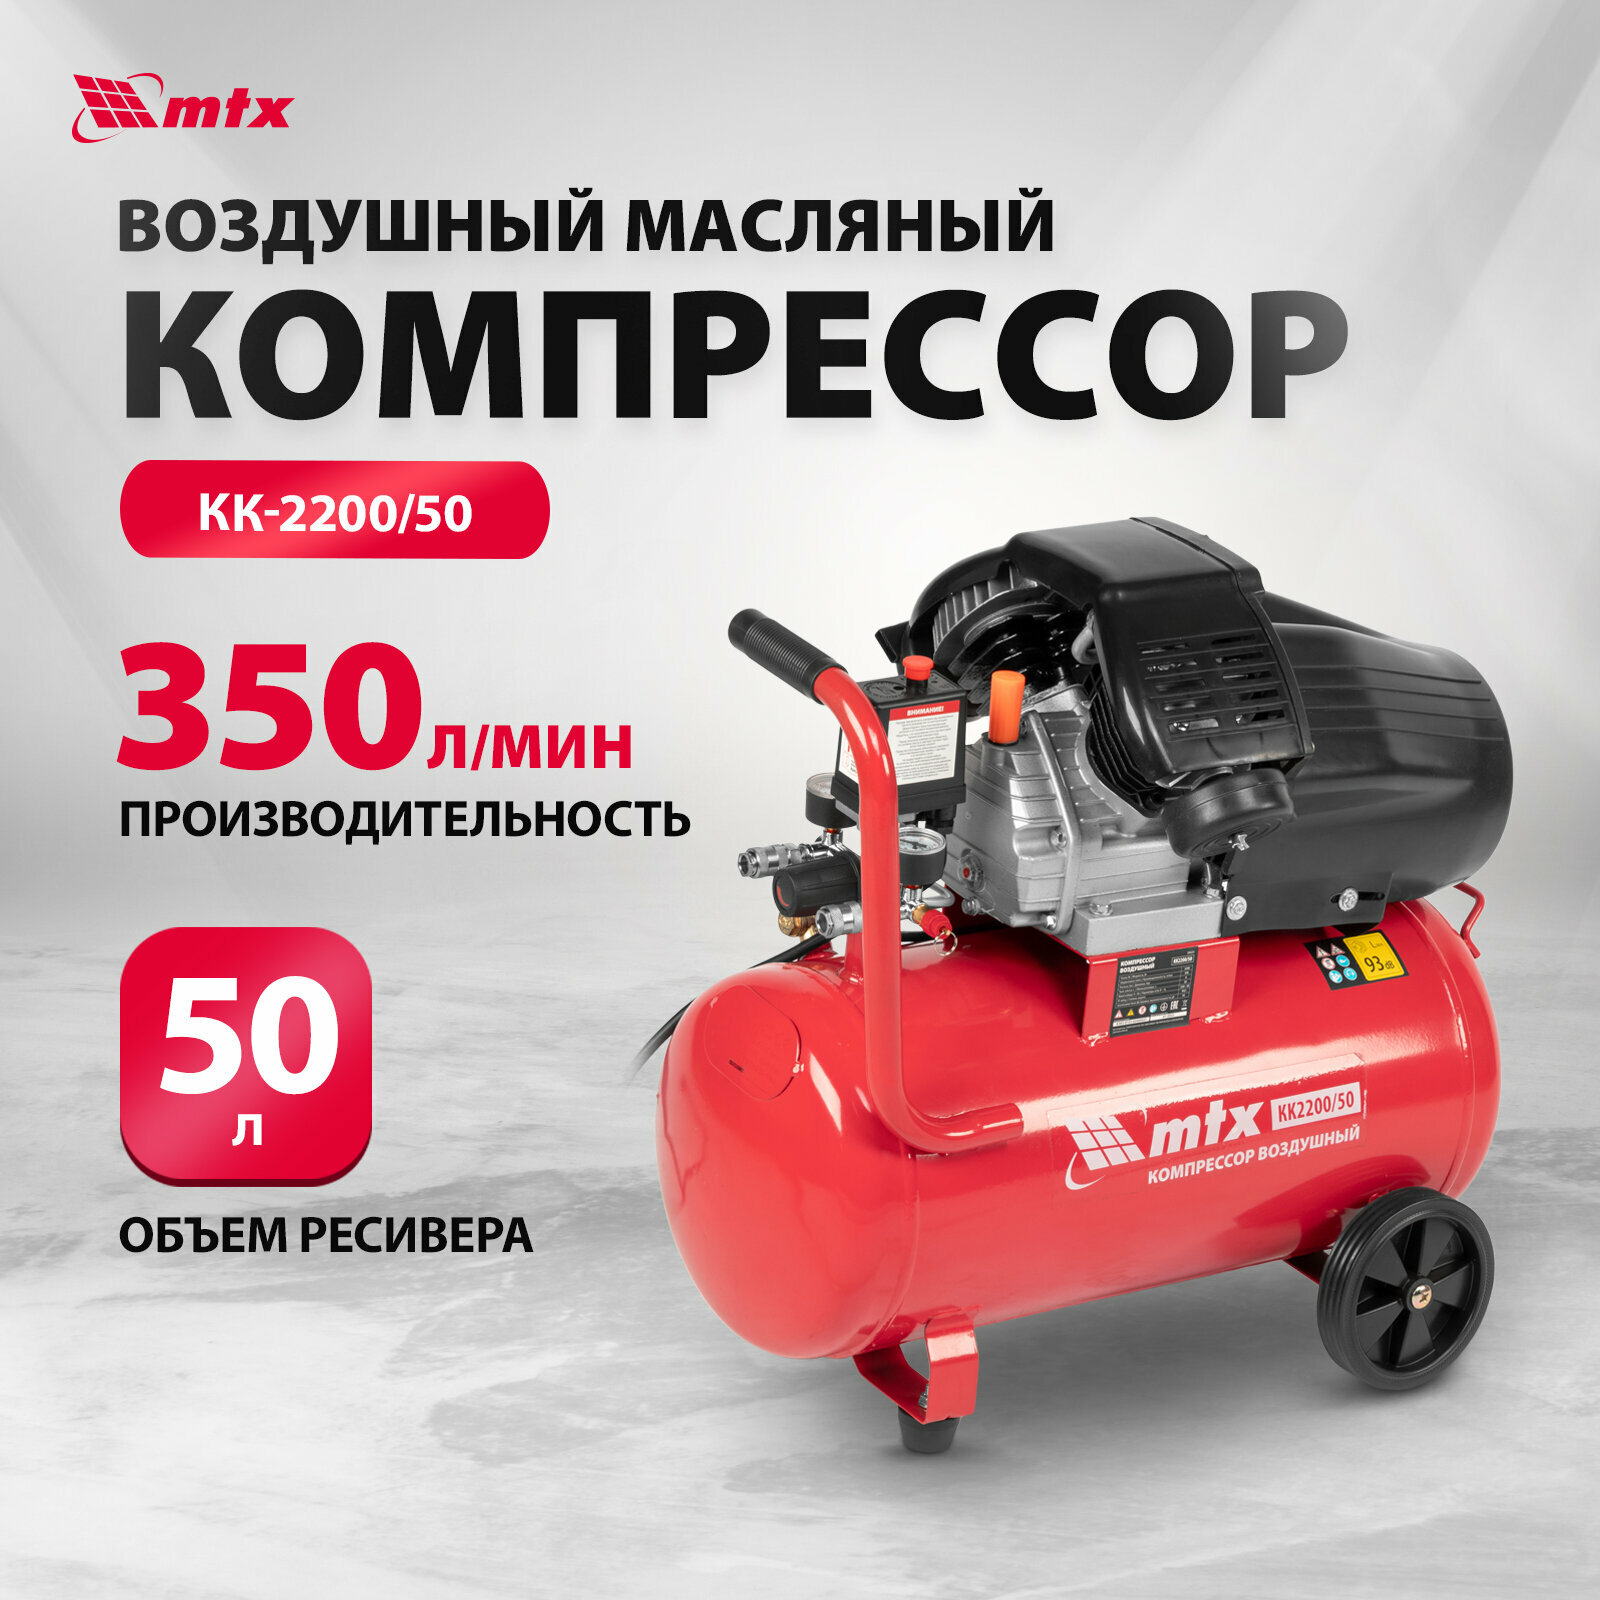 Компрессор MTX КК-2200/50 [58024] купить в Красноярске